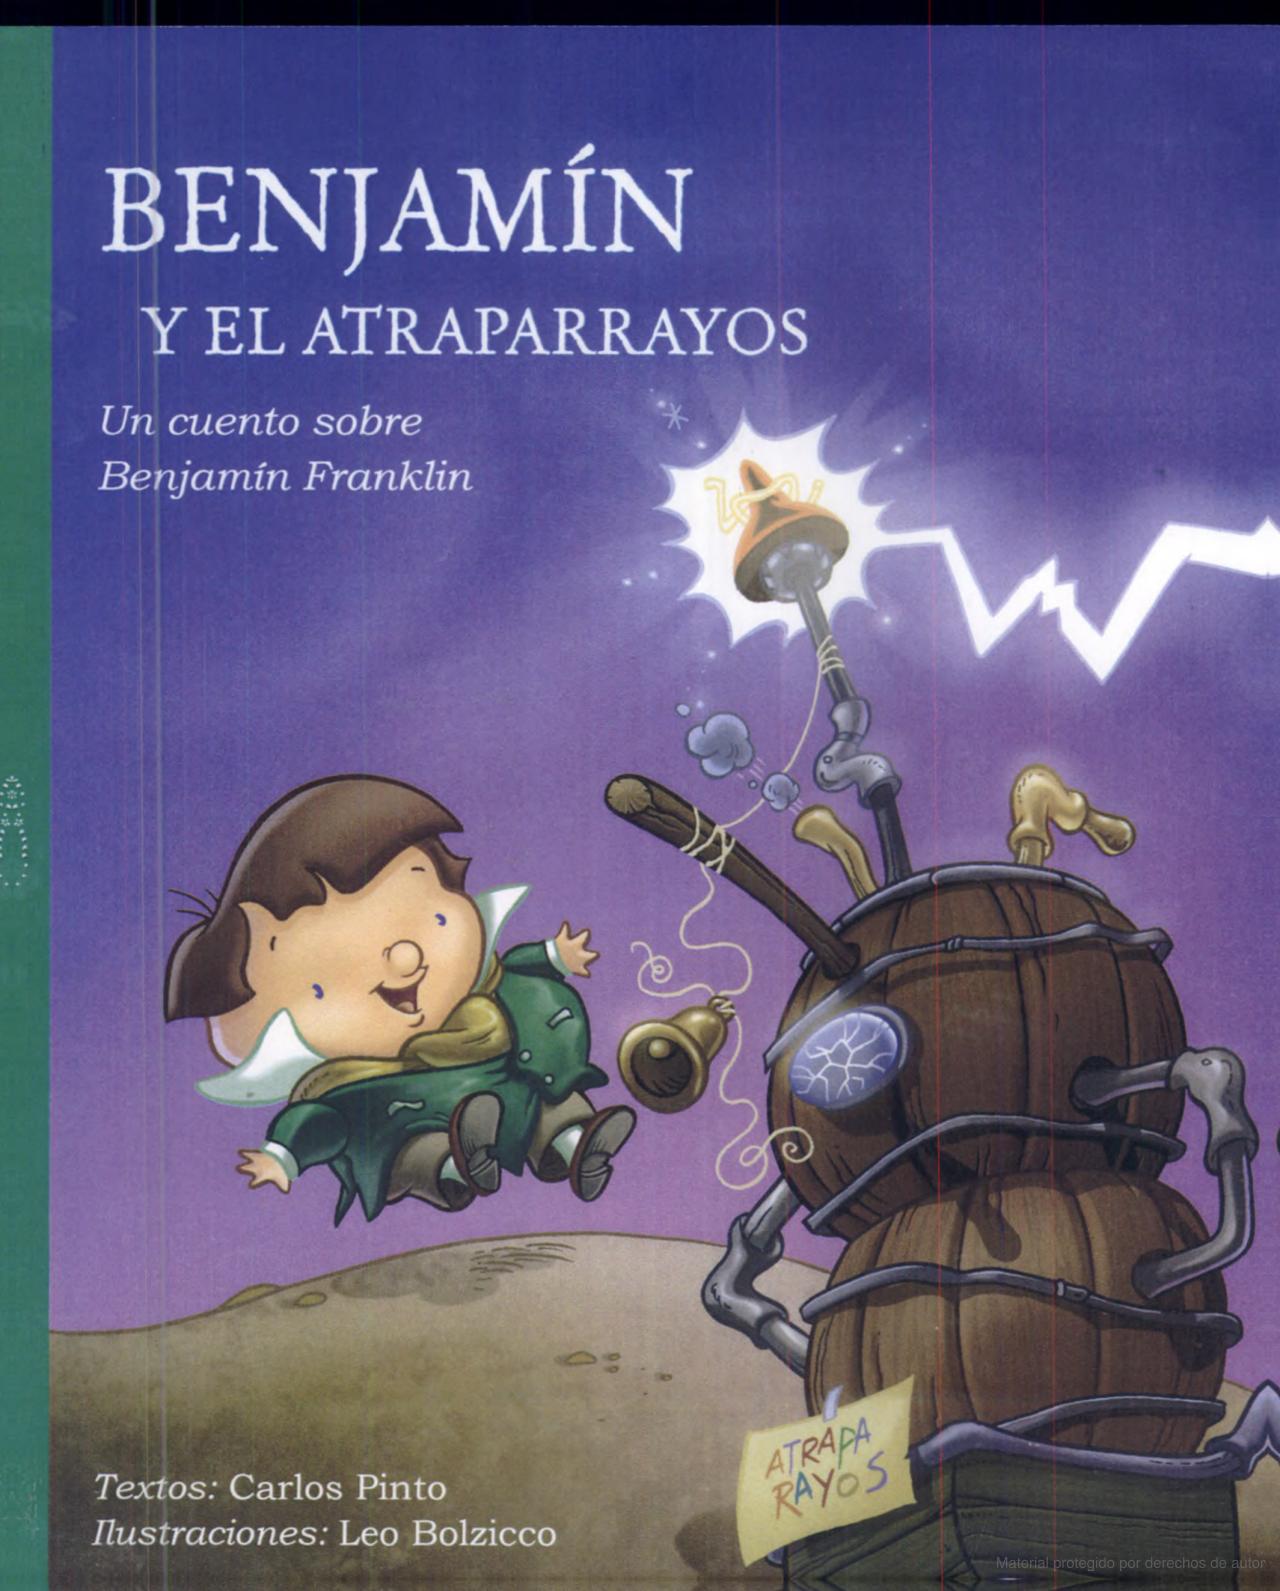 Libro: Benjamín y el atraparrayos: Un cuento sobre Benjamín Franklin por Carlos Pinto